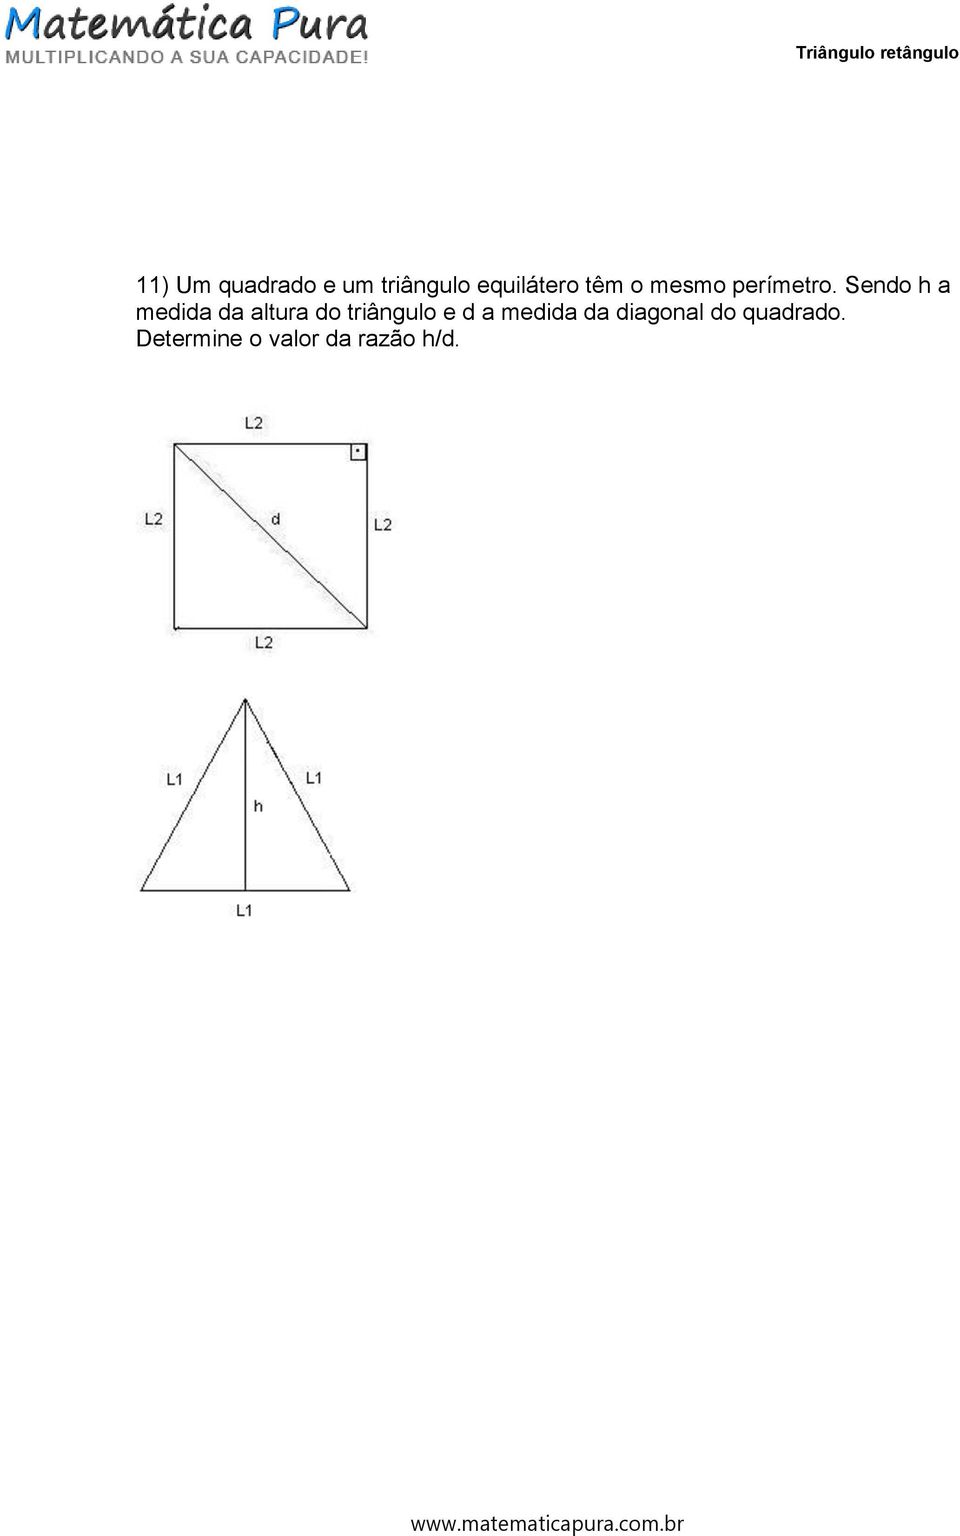 Sendo h a medida da altura do triângulo e d